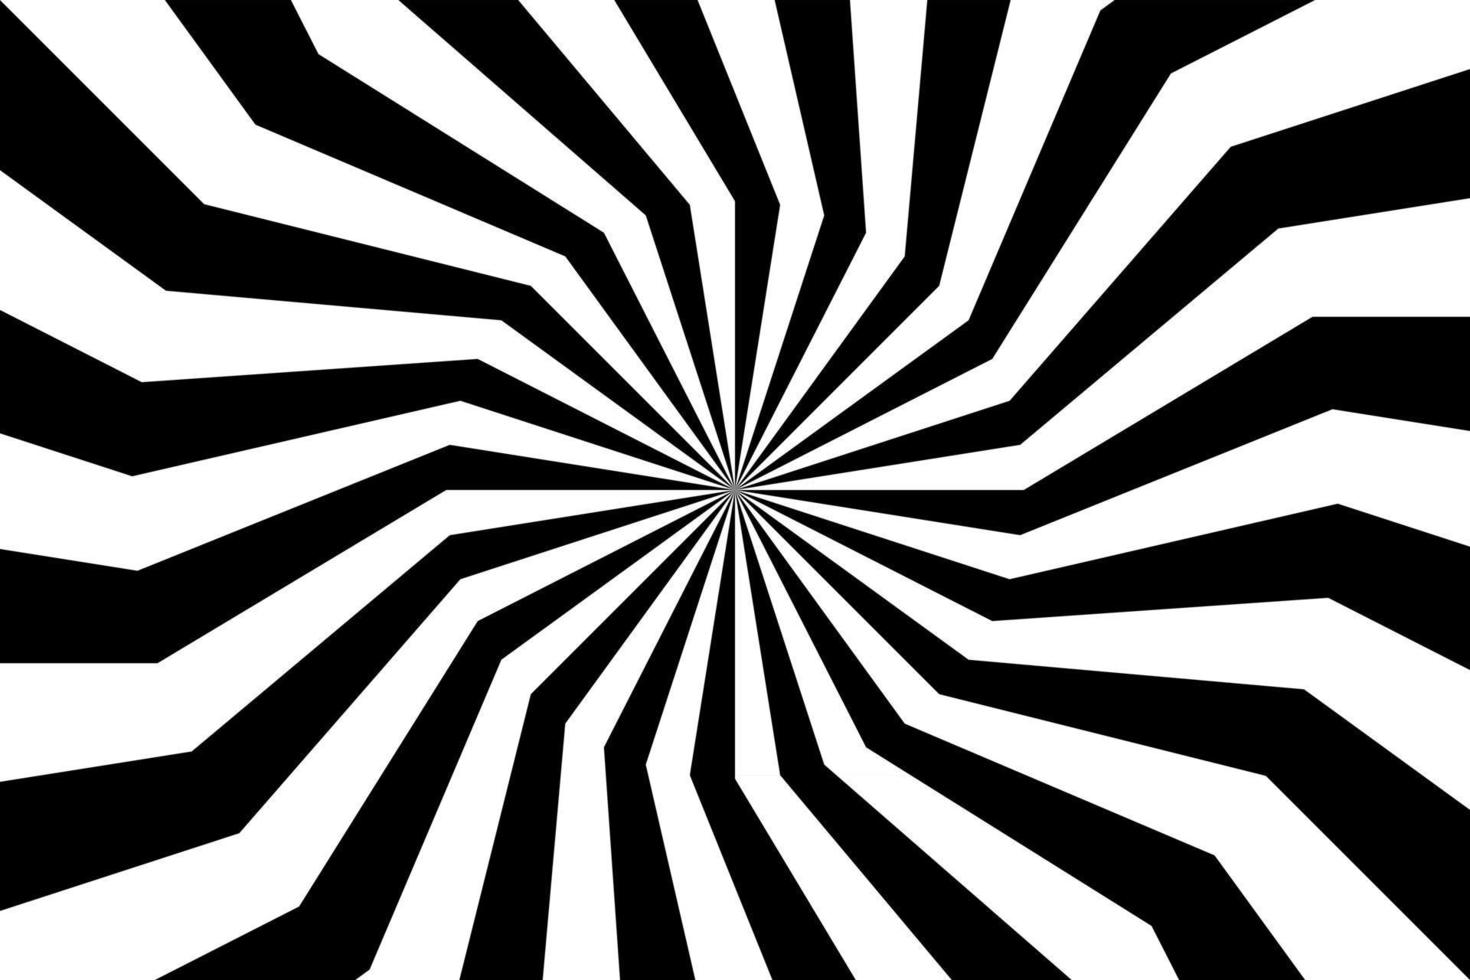 sfondo a spirale in bianco e nero, modello radiale vorticoso, illustrazione vettoriale astratta